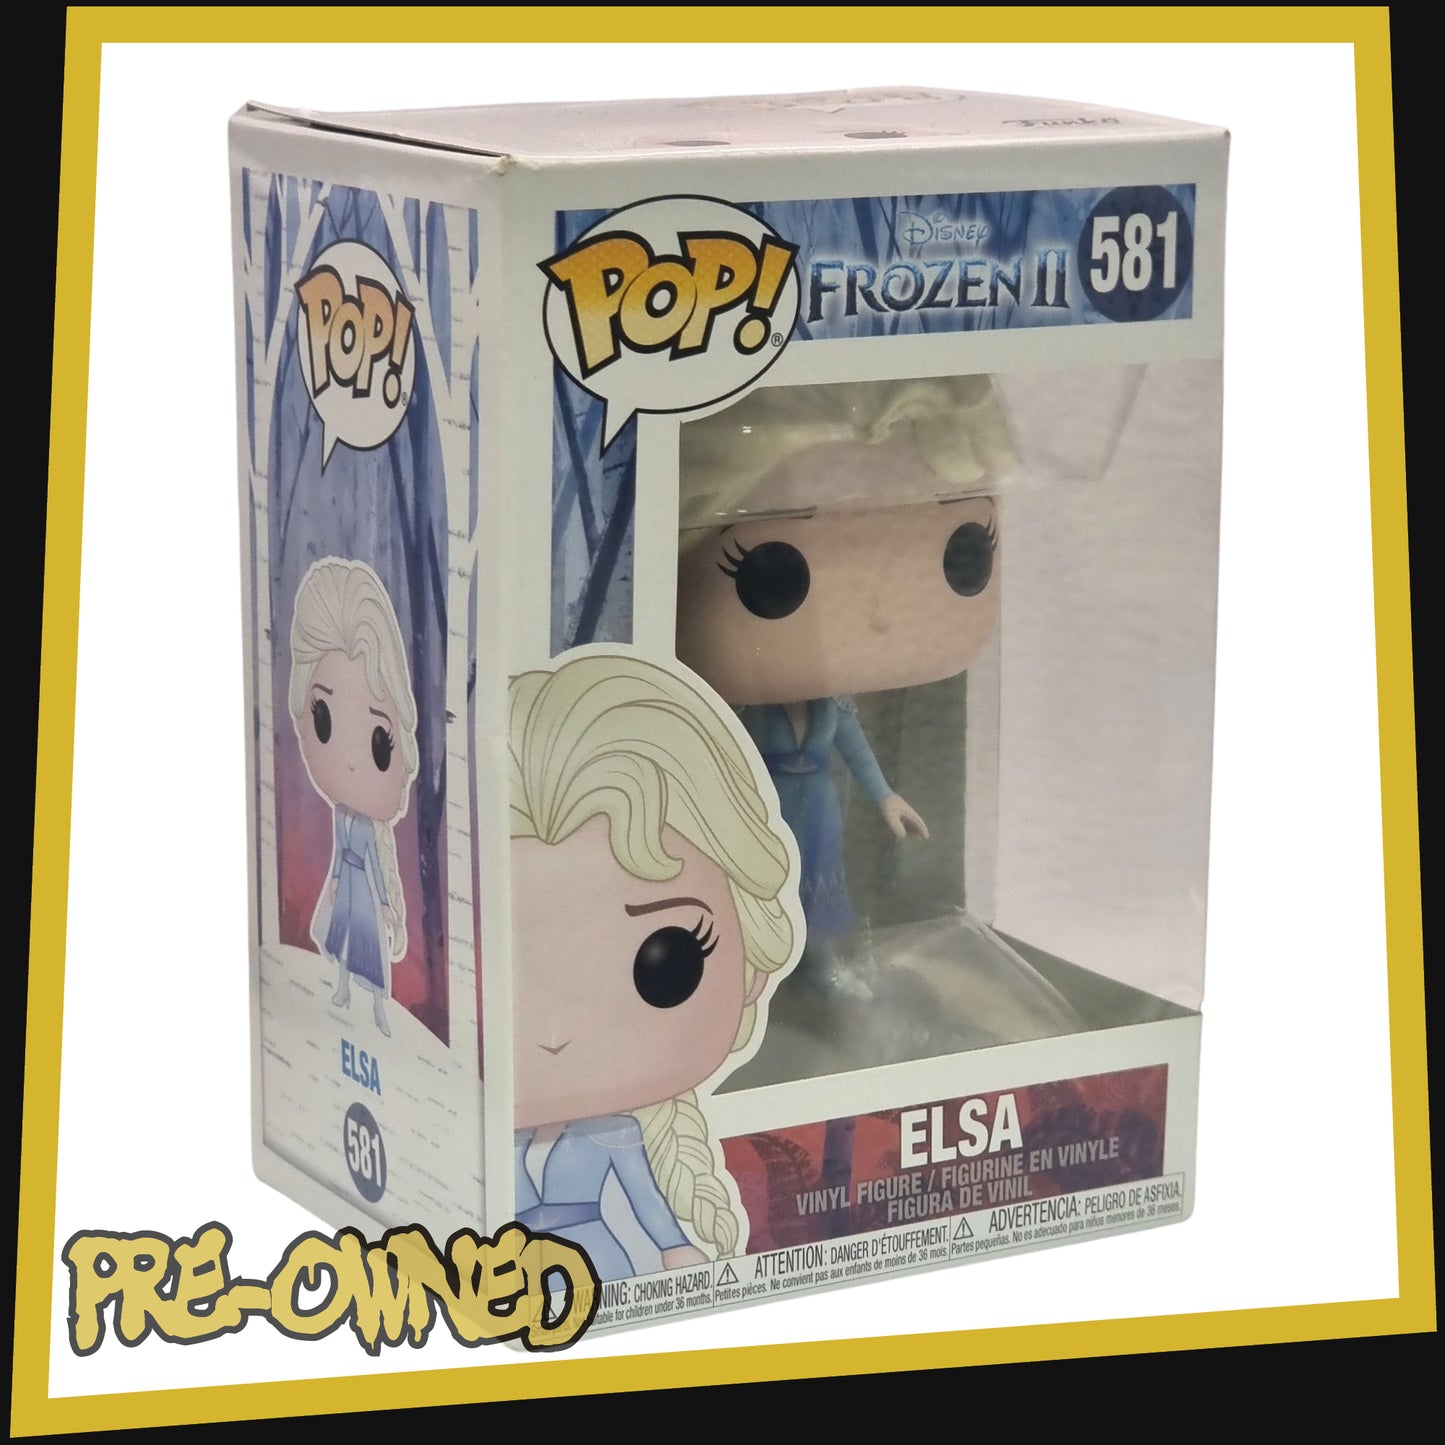 Elsa - Frozen 2 #581 Funko POP! Vinyl Disney 3.75"